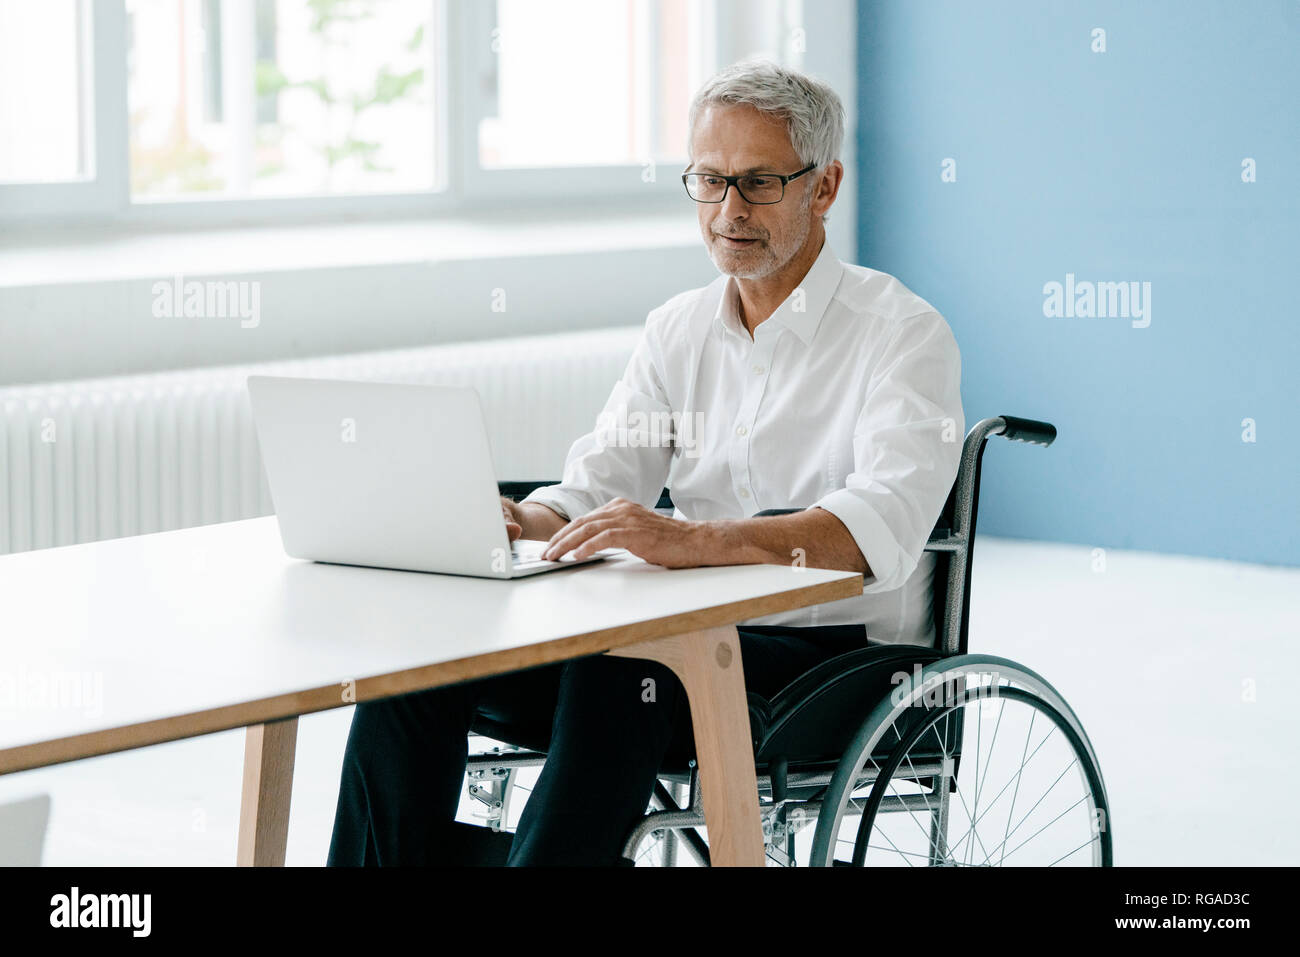 Gestionnaire de handicapés en fauteuil roulant, working in office Banque D'Images